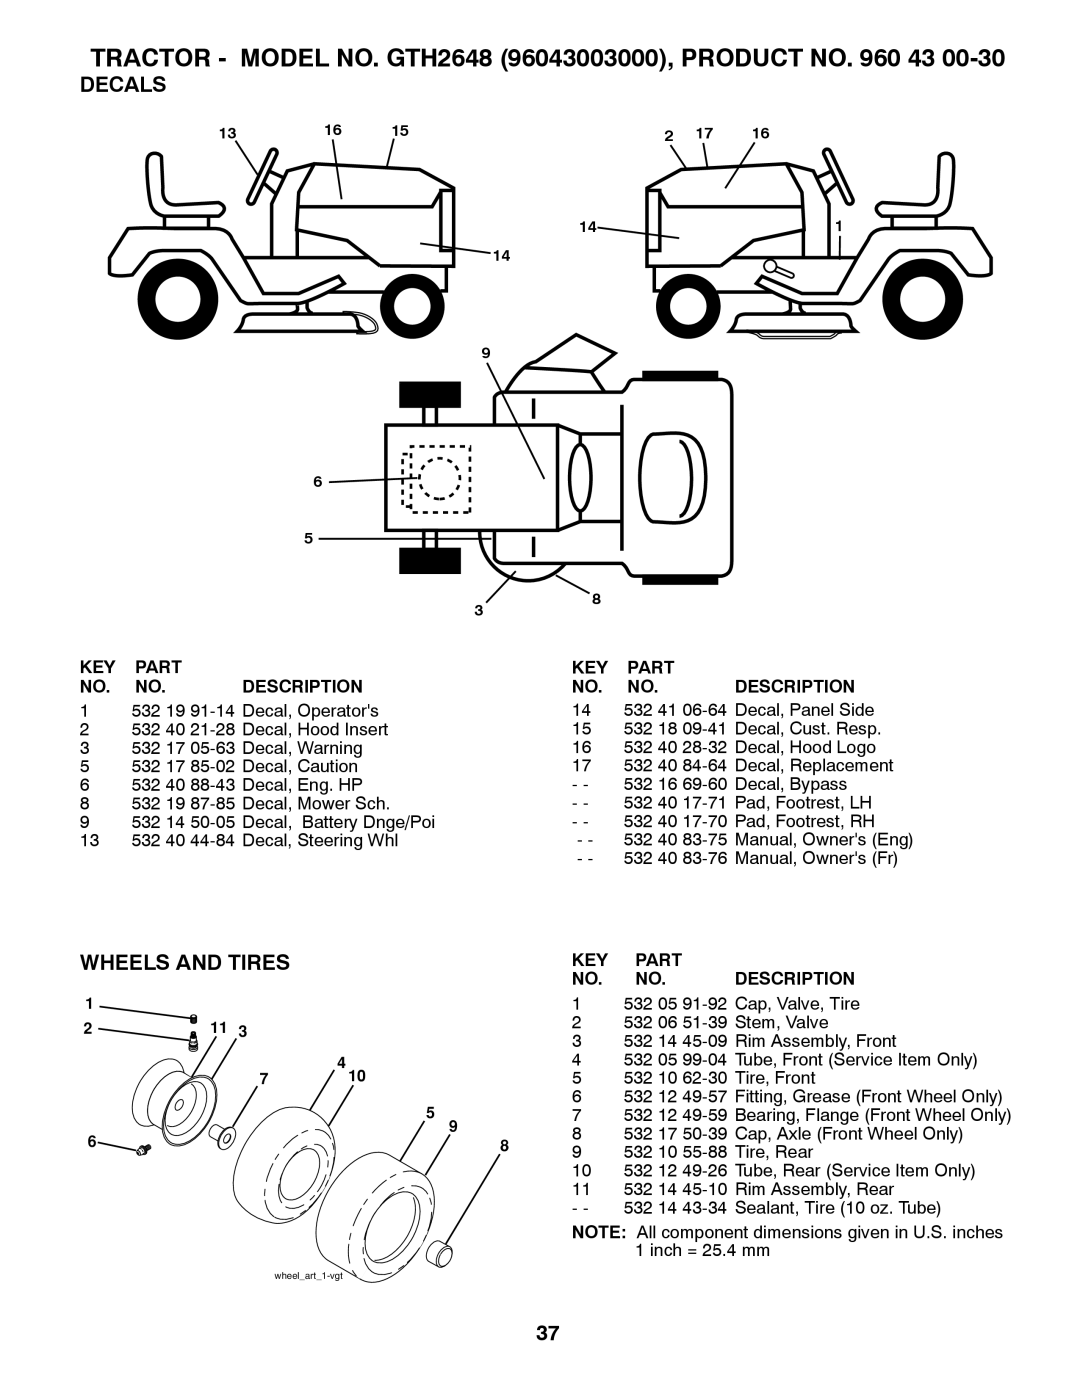 Husqvarna GTH2648 owner manual Decals, Wheels And Tires, Key Part No. No. Description 